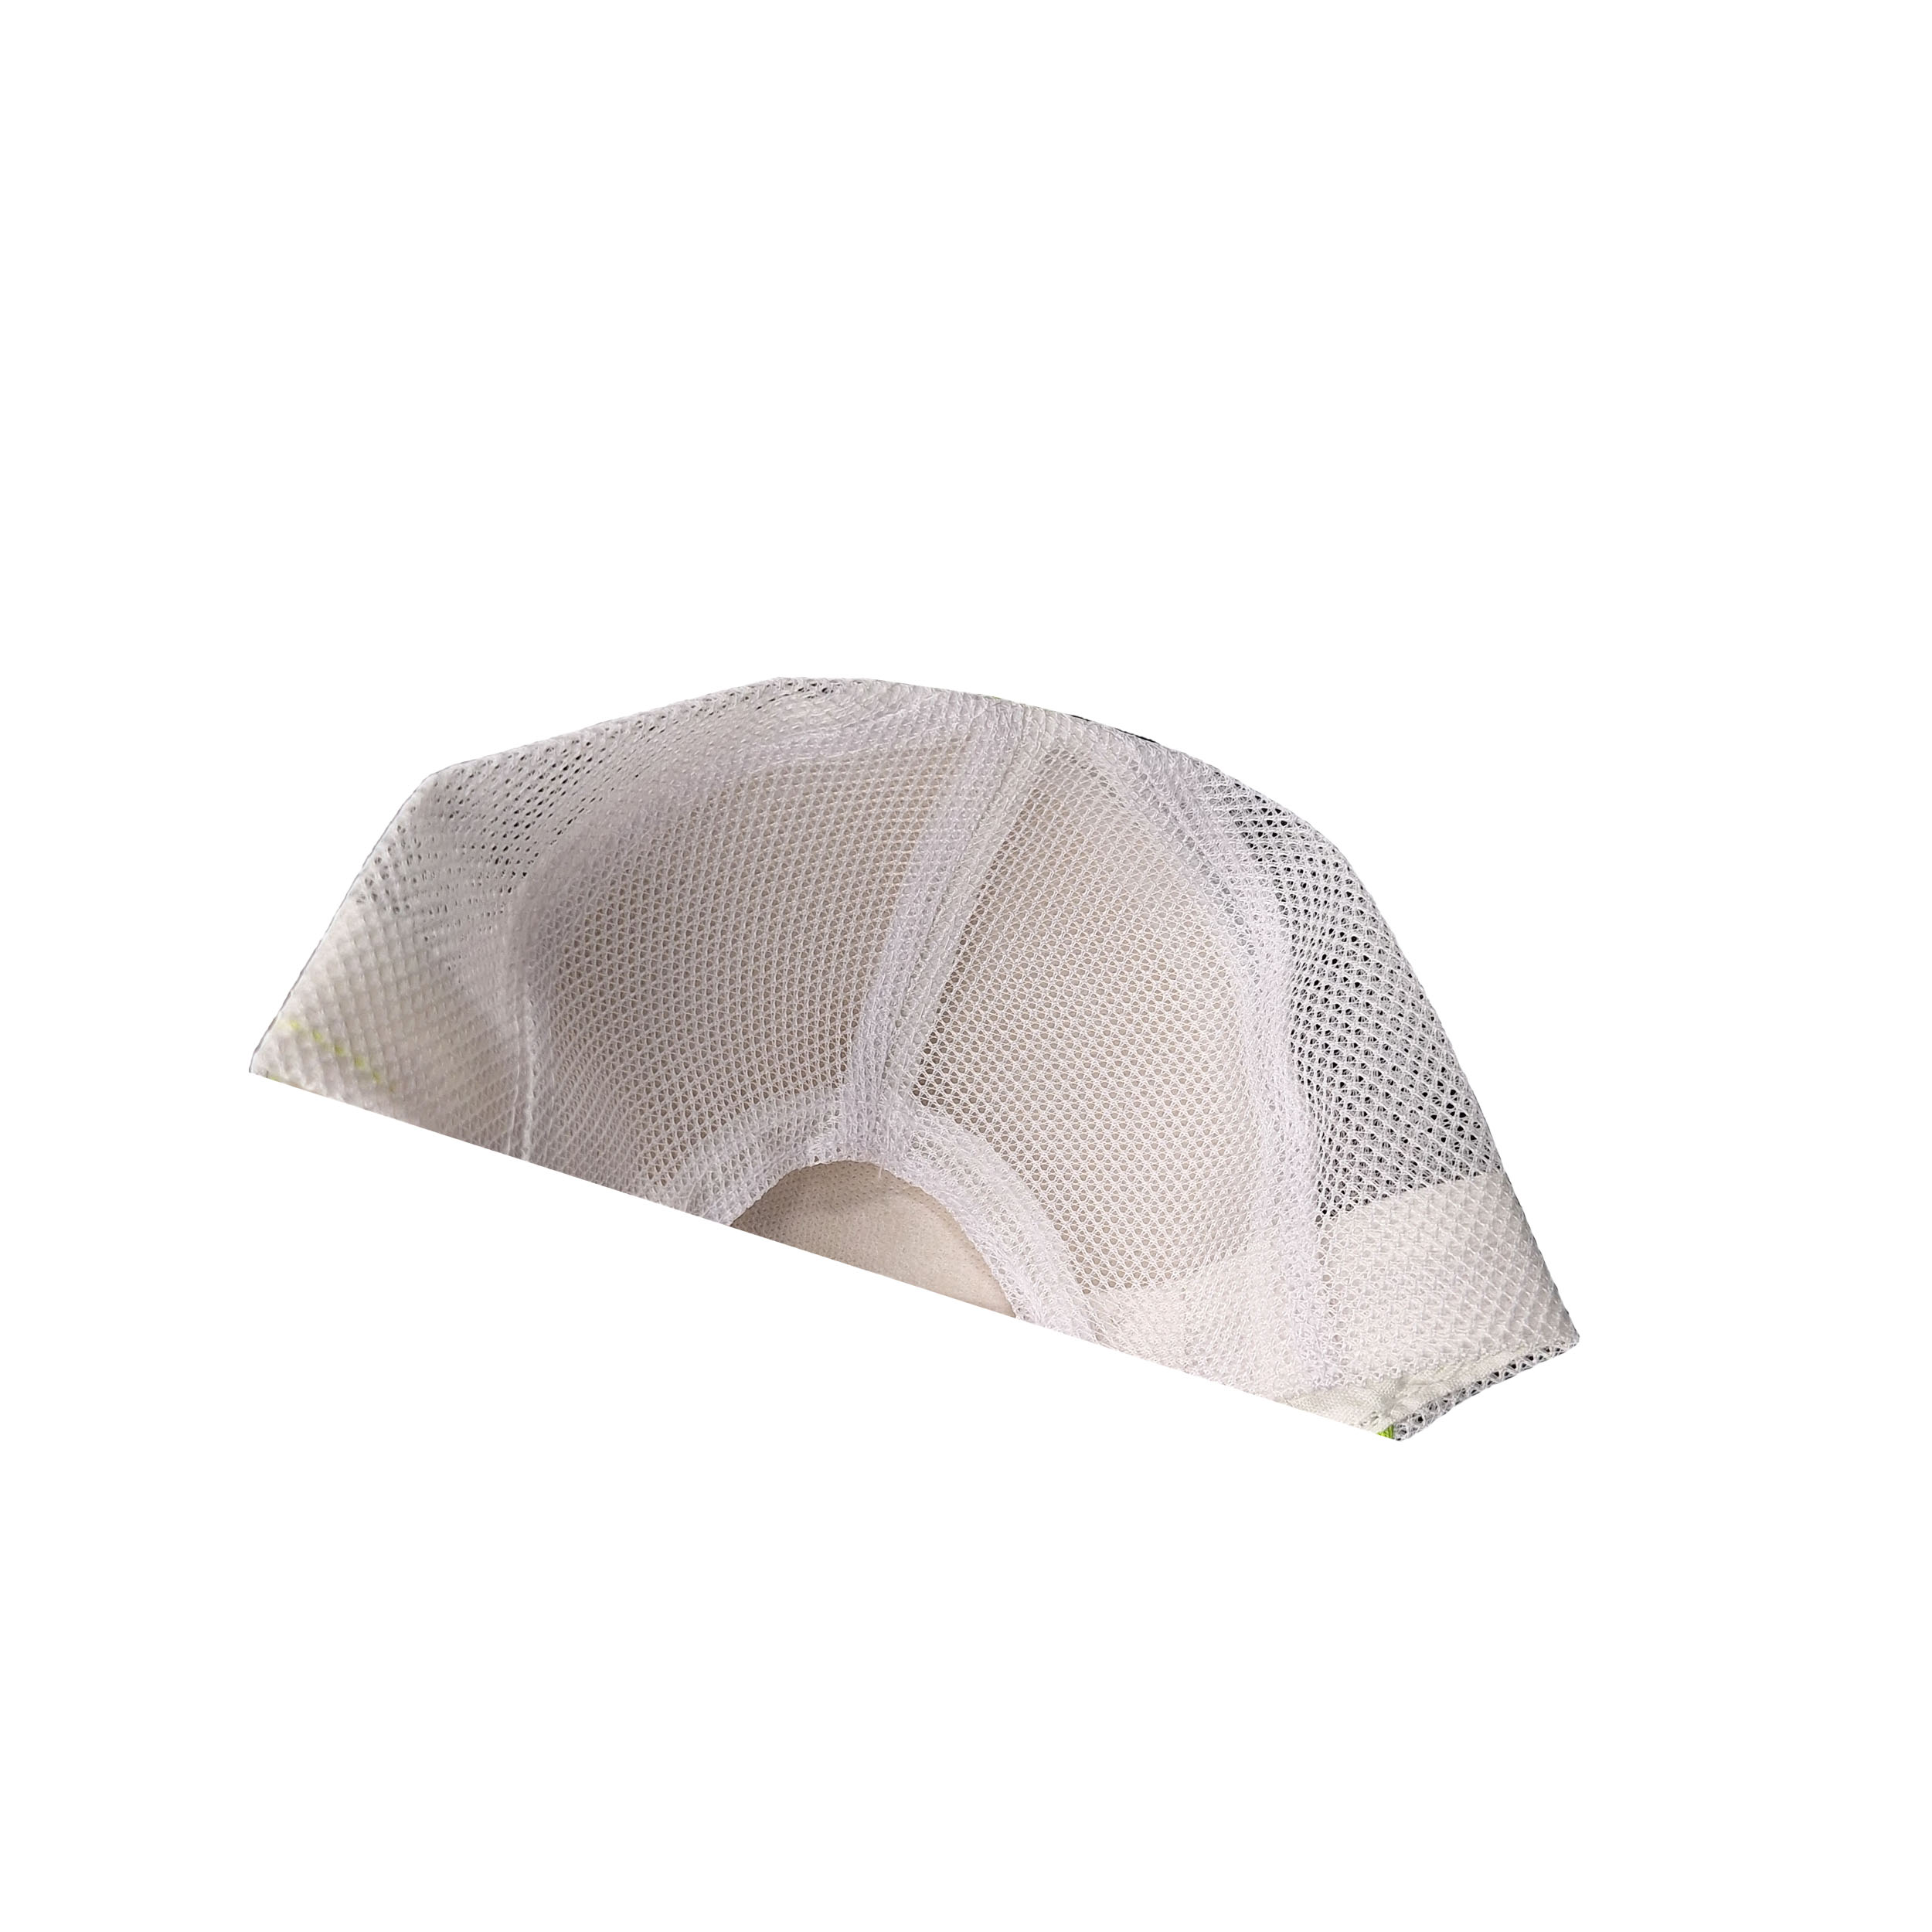 کلاه کپ بچگانه مدل VESPEA کد 1225 رنگ صورتی -  - 3